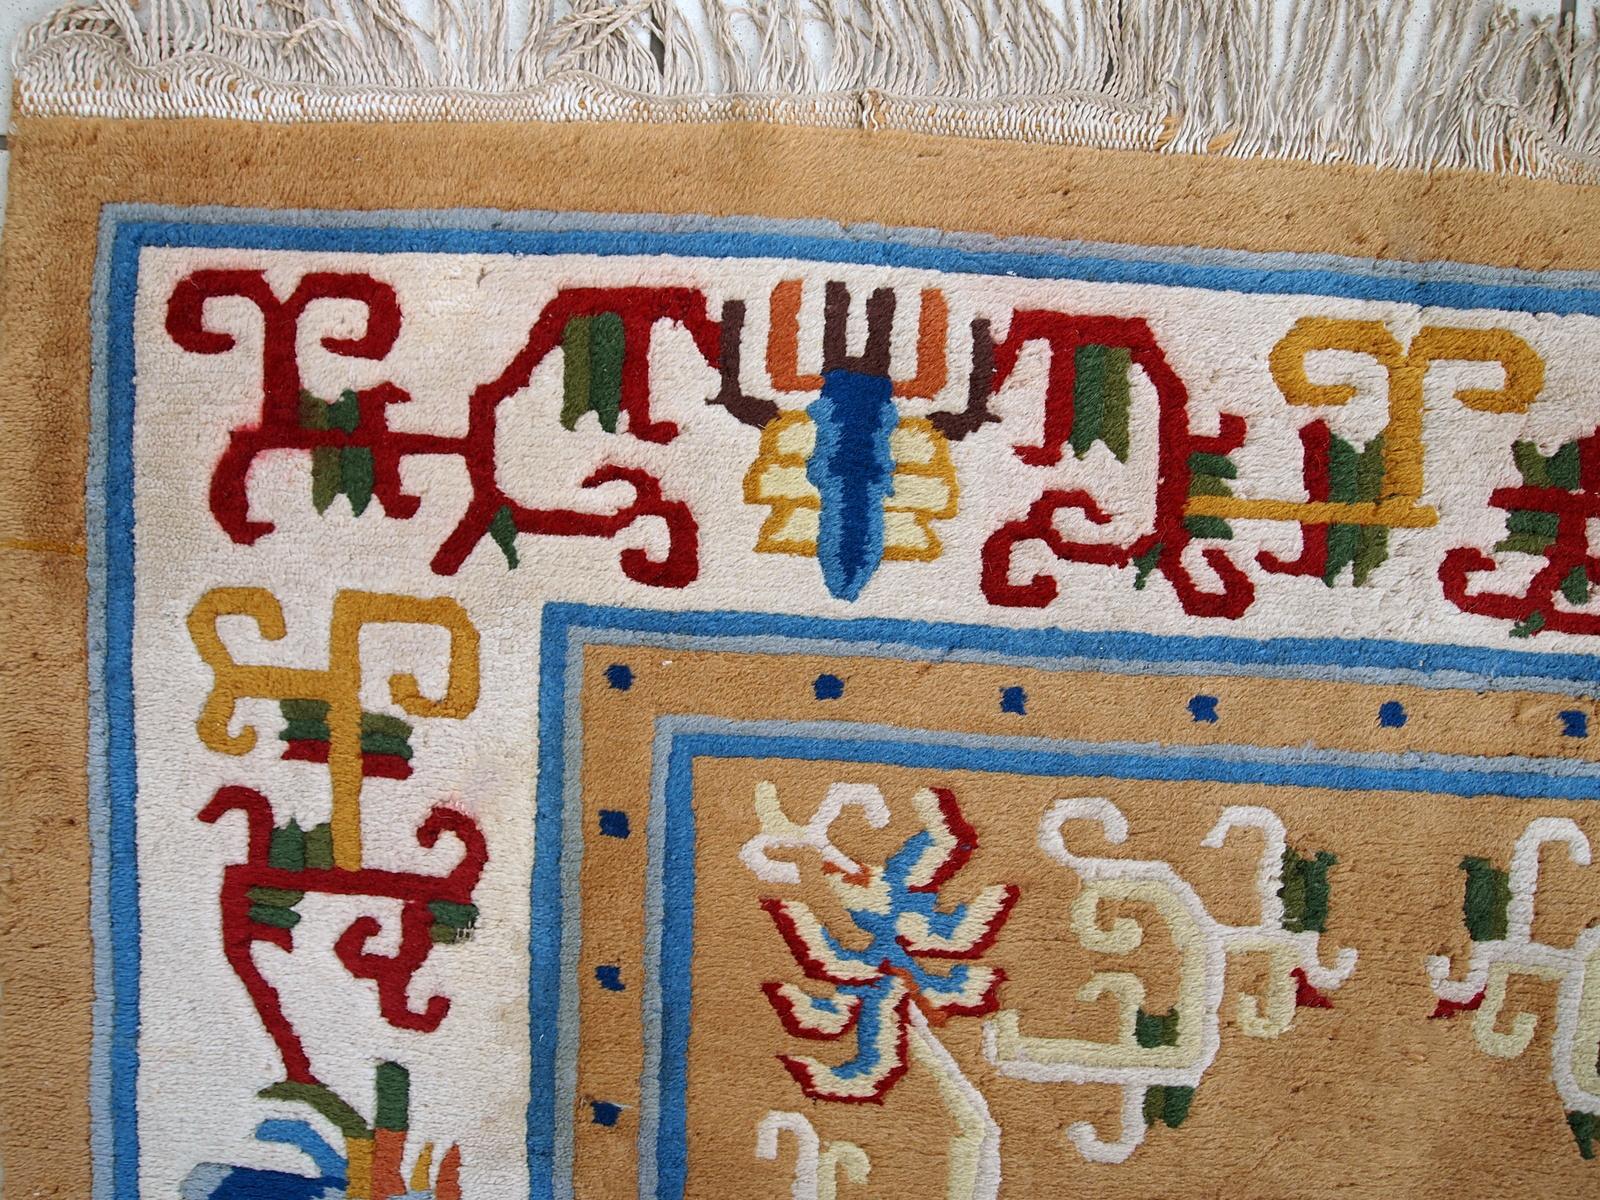 Vintage handgefertigt Art Deco chinesischen Teppich in gutem Zustand. Schöner hellbrauner Hintergrund mit abstraktem Muster in Burgunder- und Blautönen. 

-Zustand: Gut,

-CIRCA 1960er Jahre,

-Größe: 120cm x 213cm (3,9' x 6,9'),

-MATERIAL: